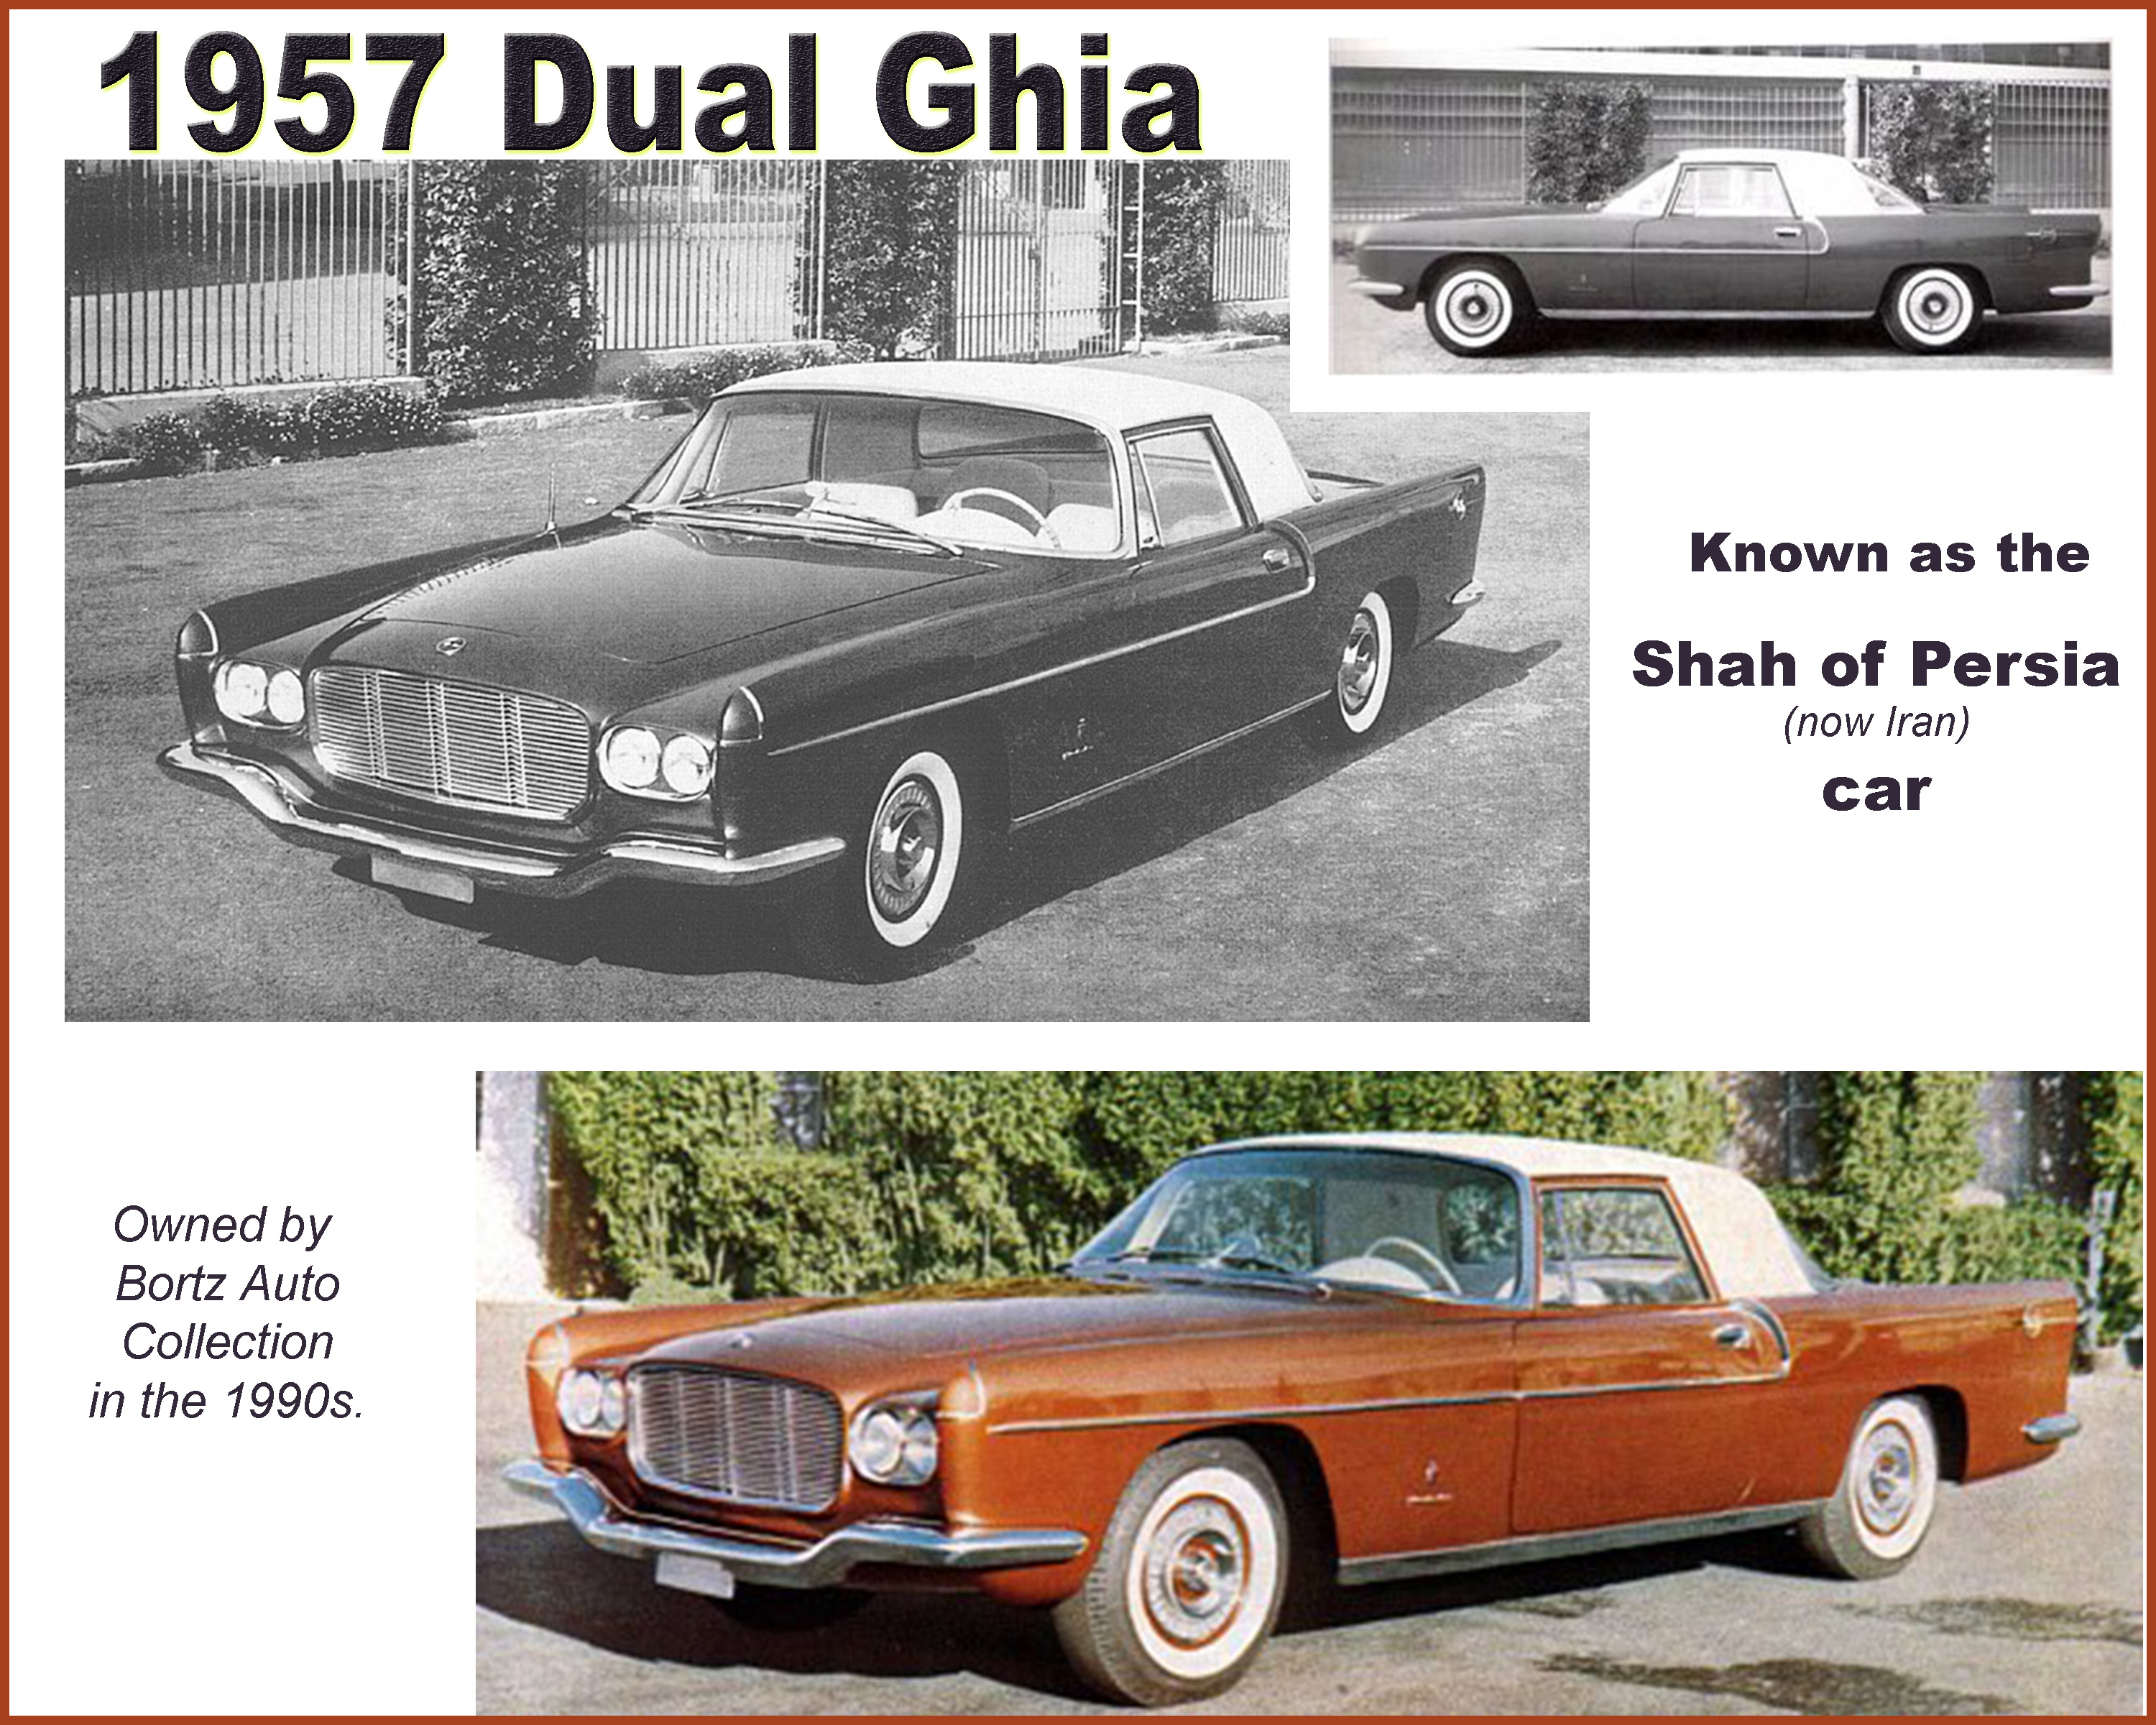 1957 Dual Ghia "Shah of Persia